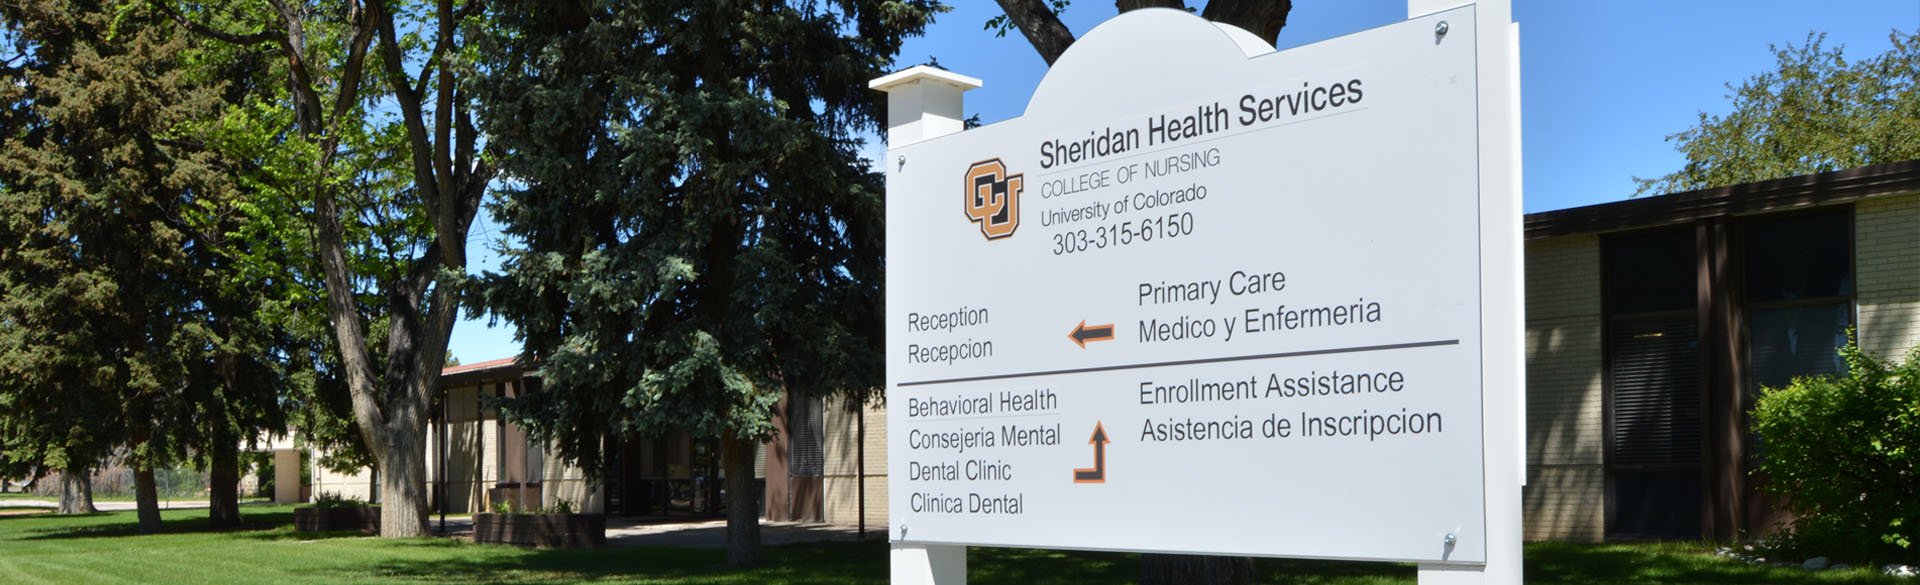 Sheridan Health Service